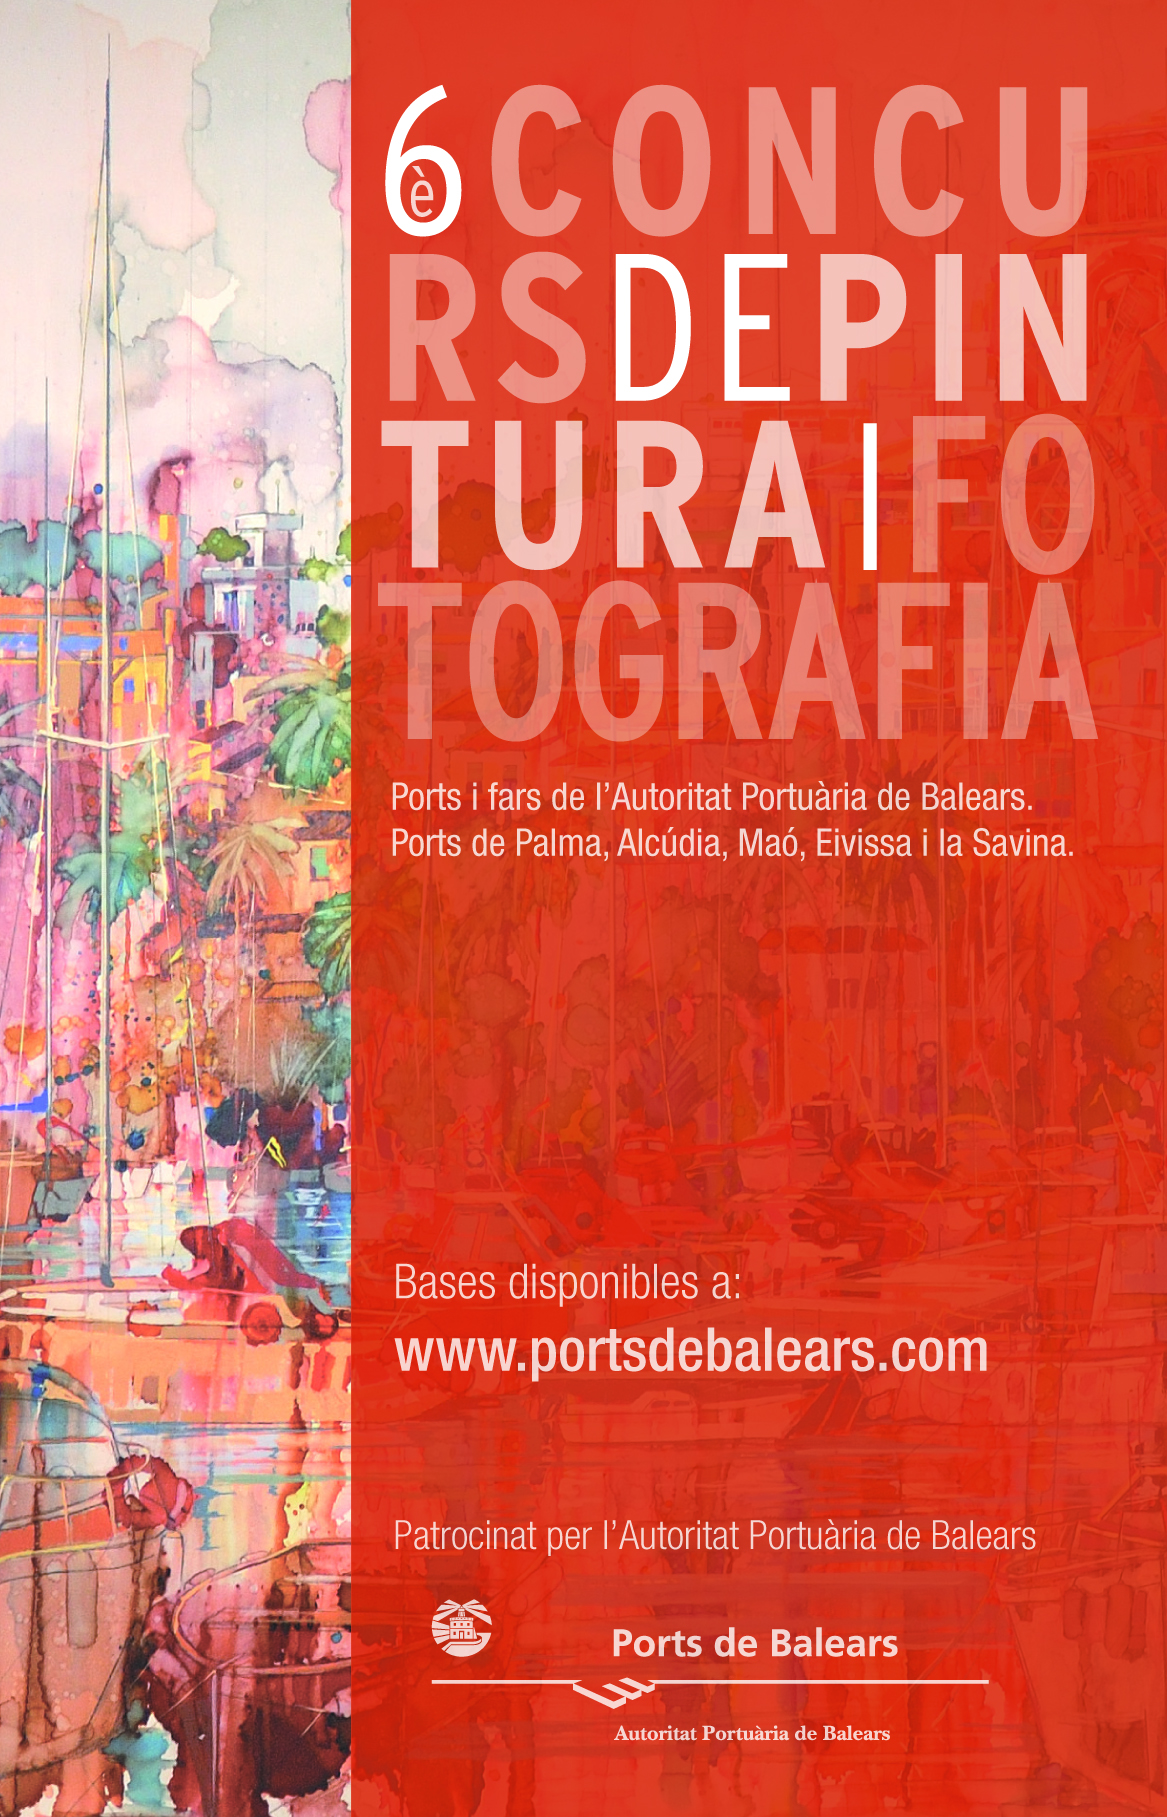 La Autoridad Portuaria de Baleares convoca el 6º Concurso de Pintura y Fotografía sobre los puertos y faros de Baleares